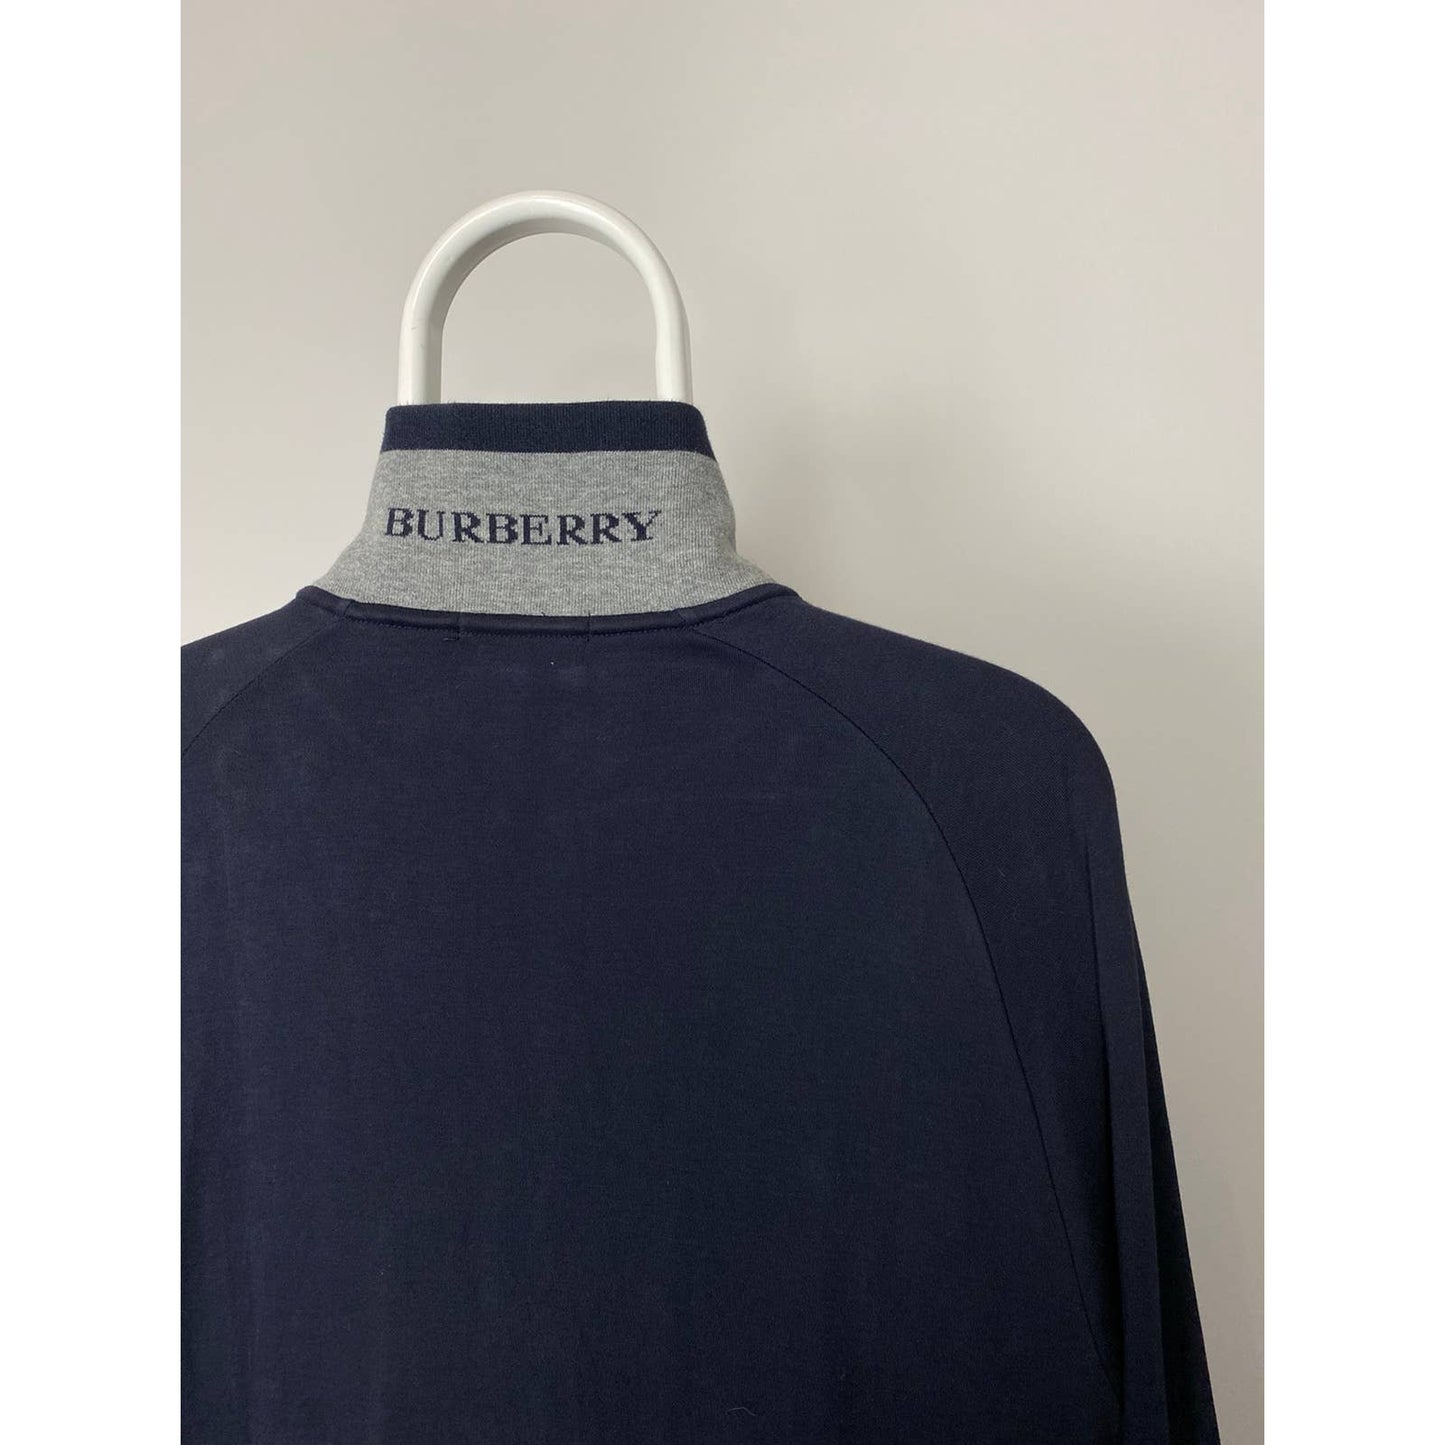 Burberry vintage zip up turtleneck sweatshirt spellout